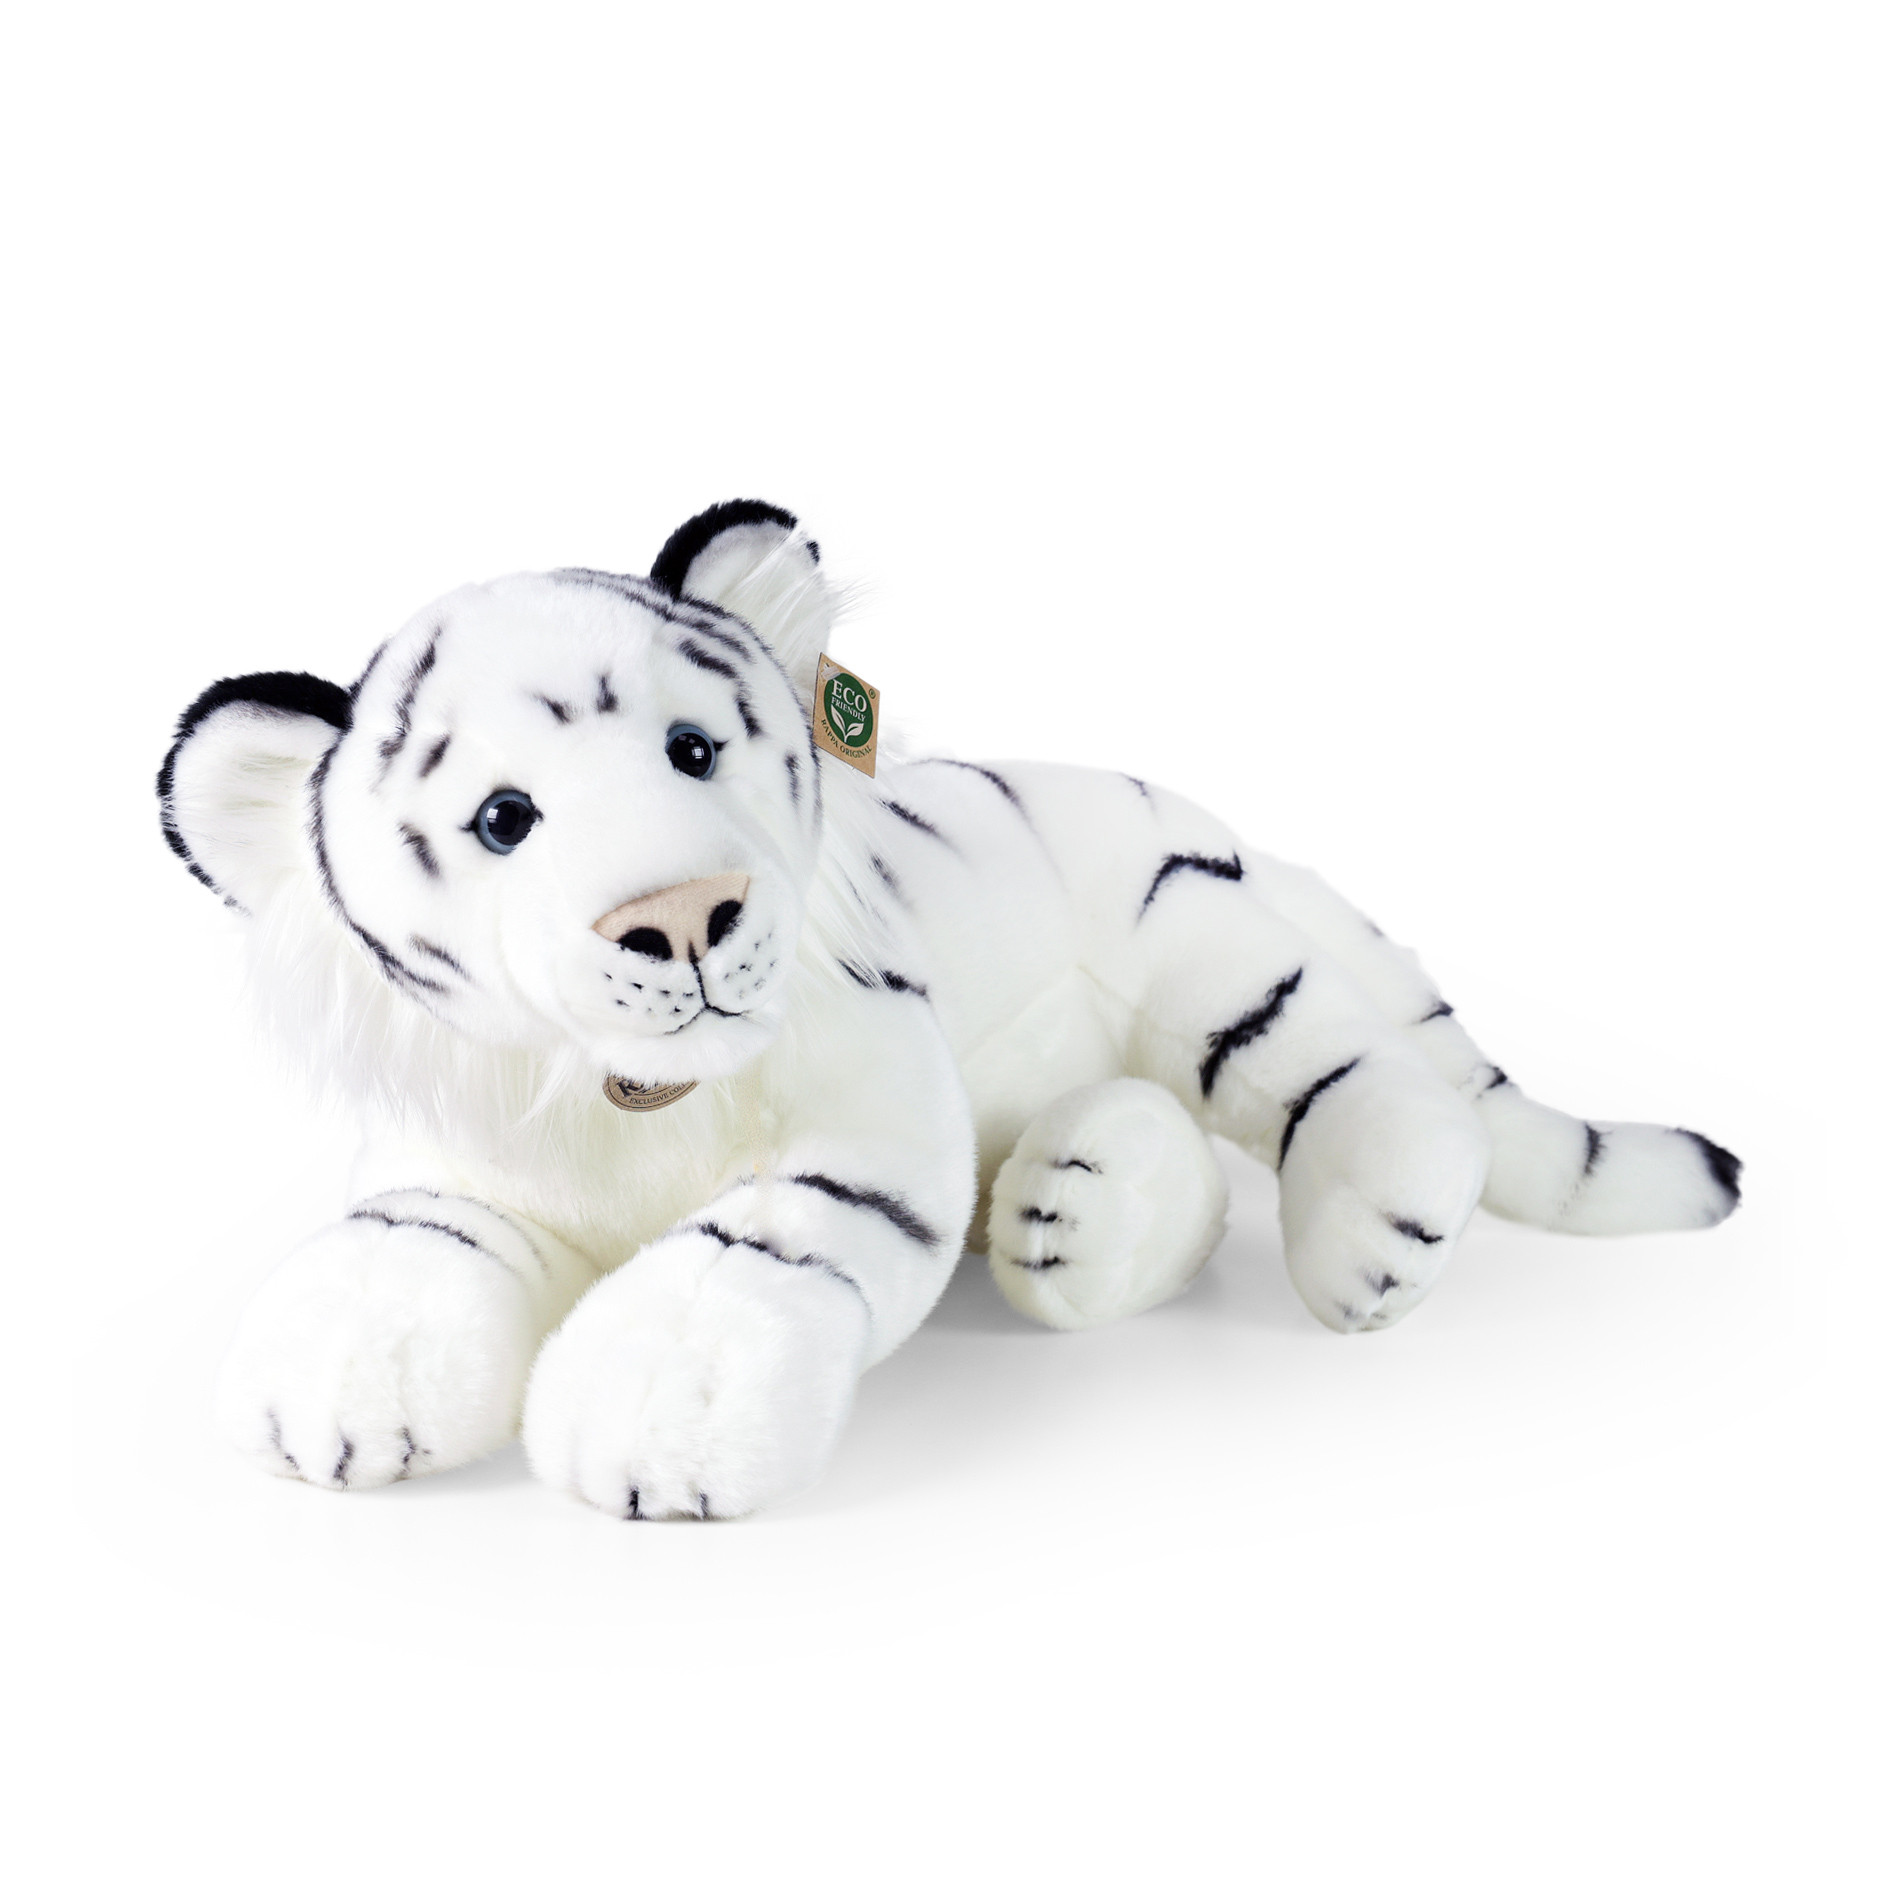 Plyšový tygr bíly 60 cm ECO-FRIENDLY